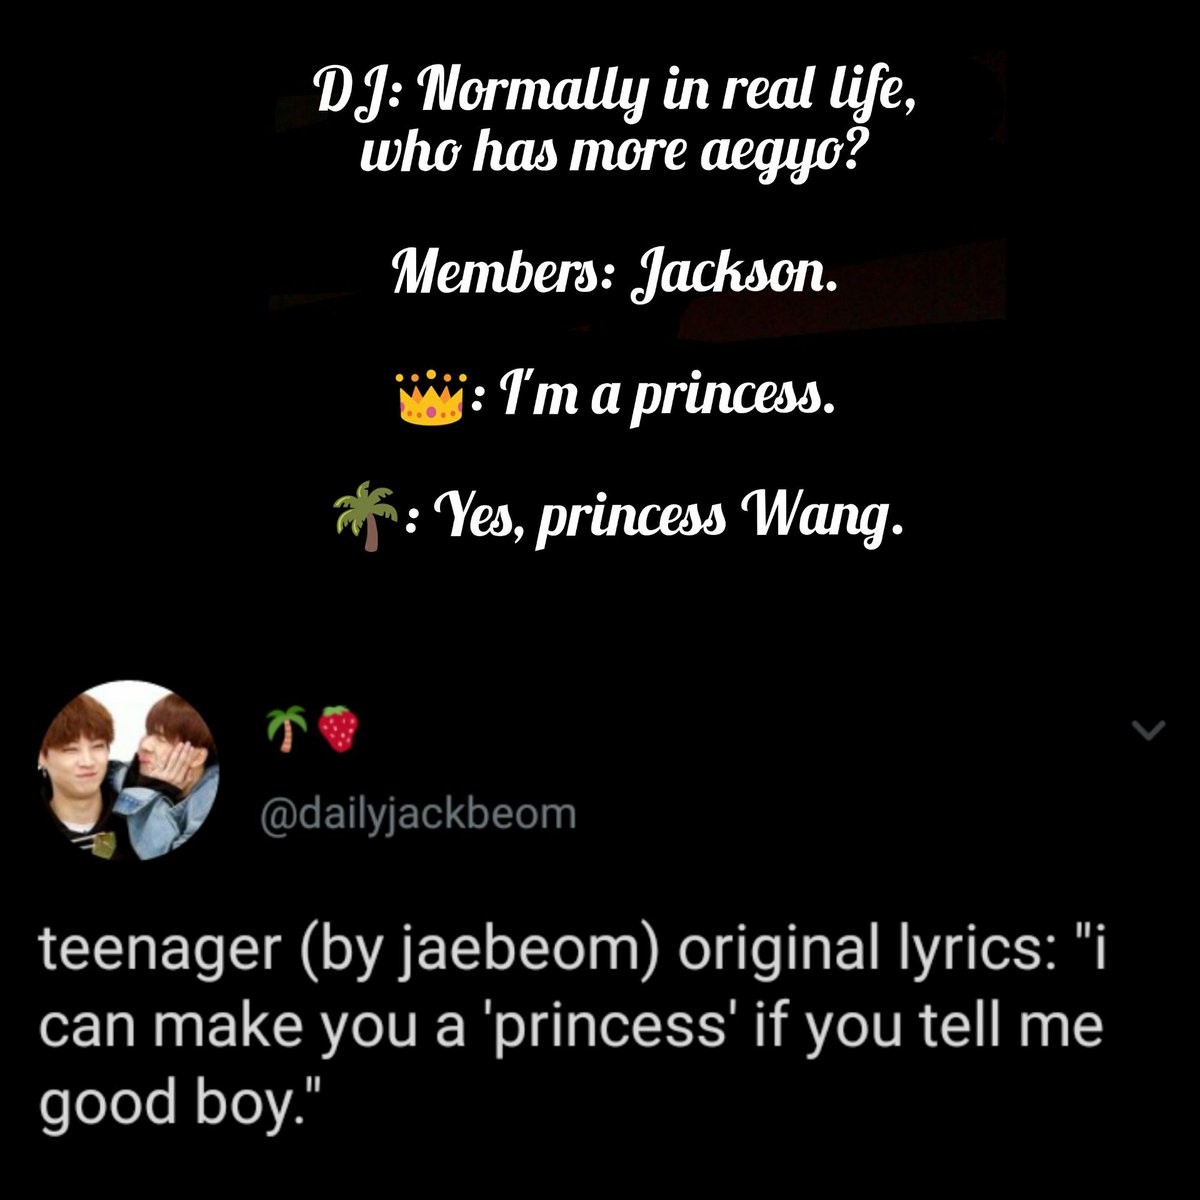 A Princess Story... and Jackson said "Im Prince and Wang Princess"